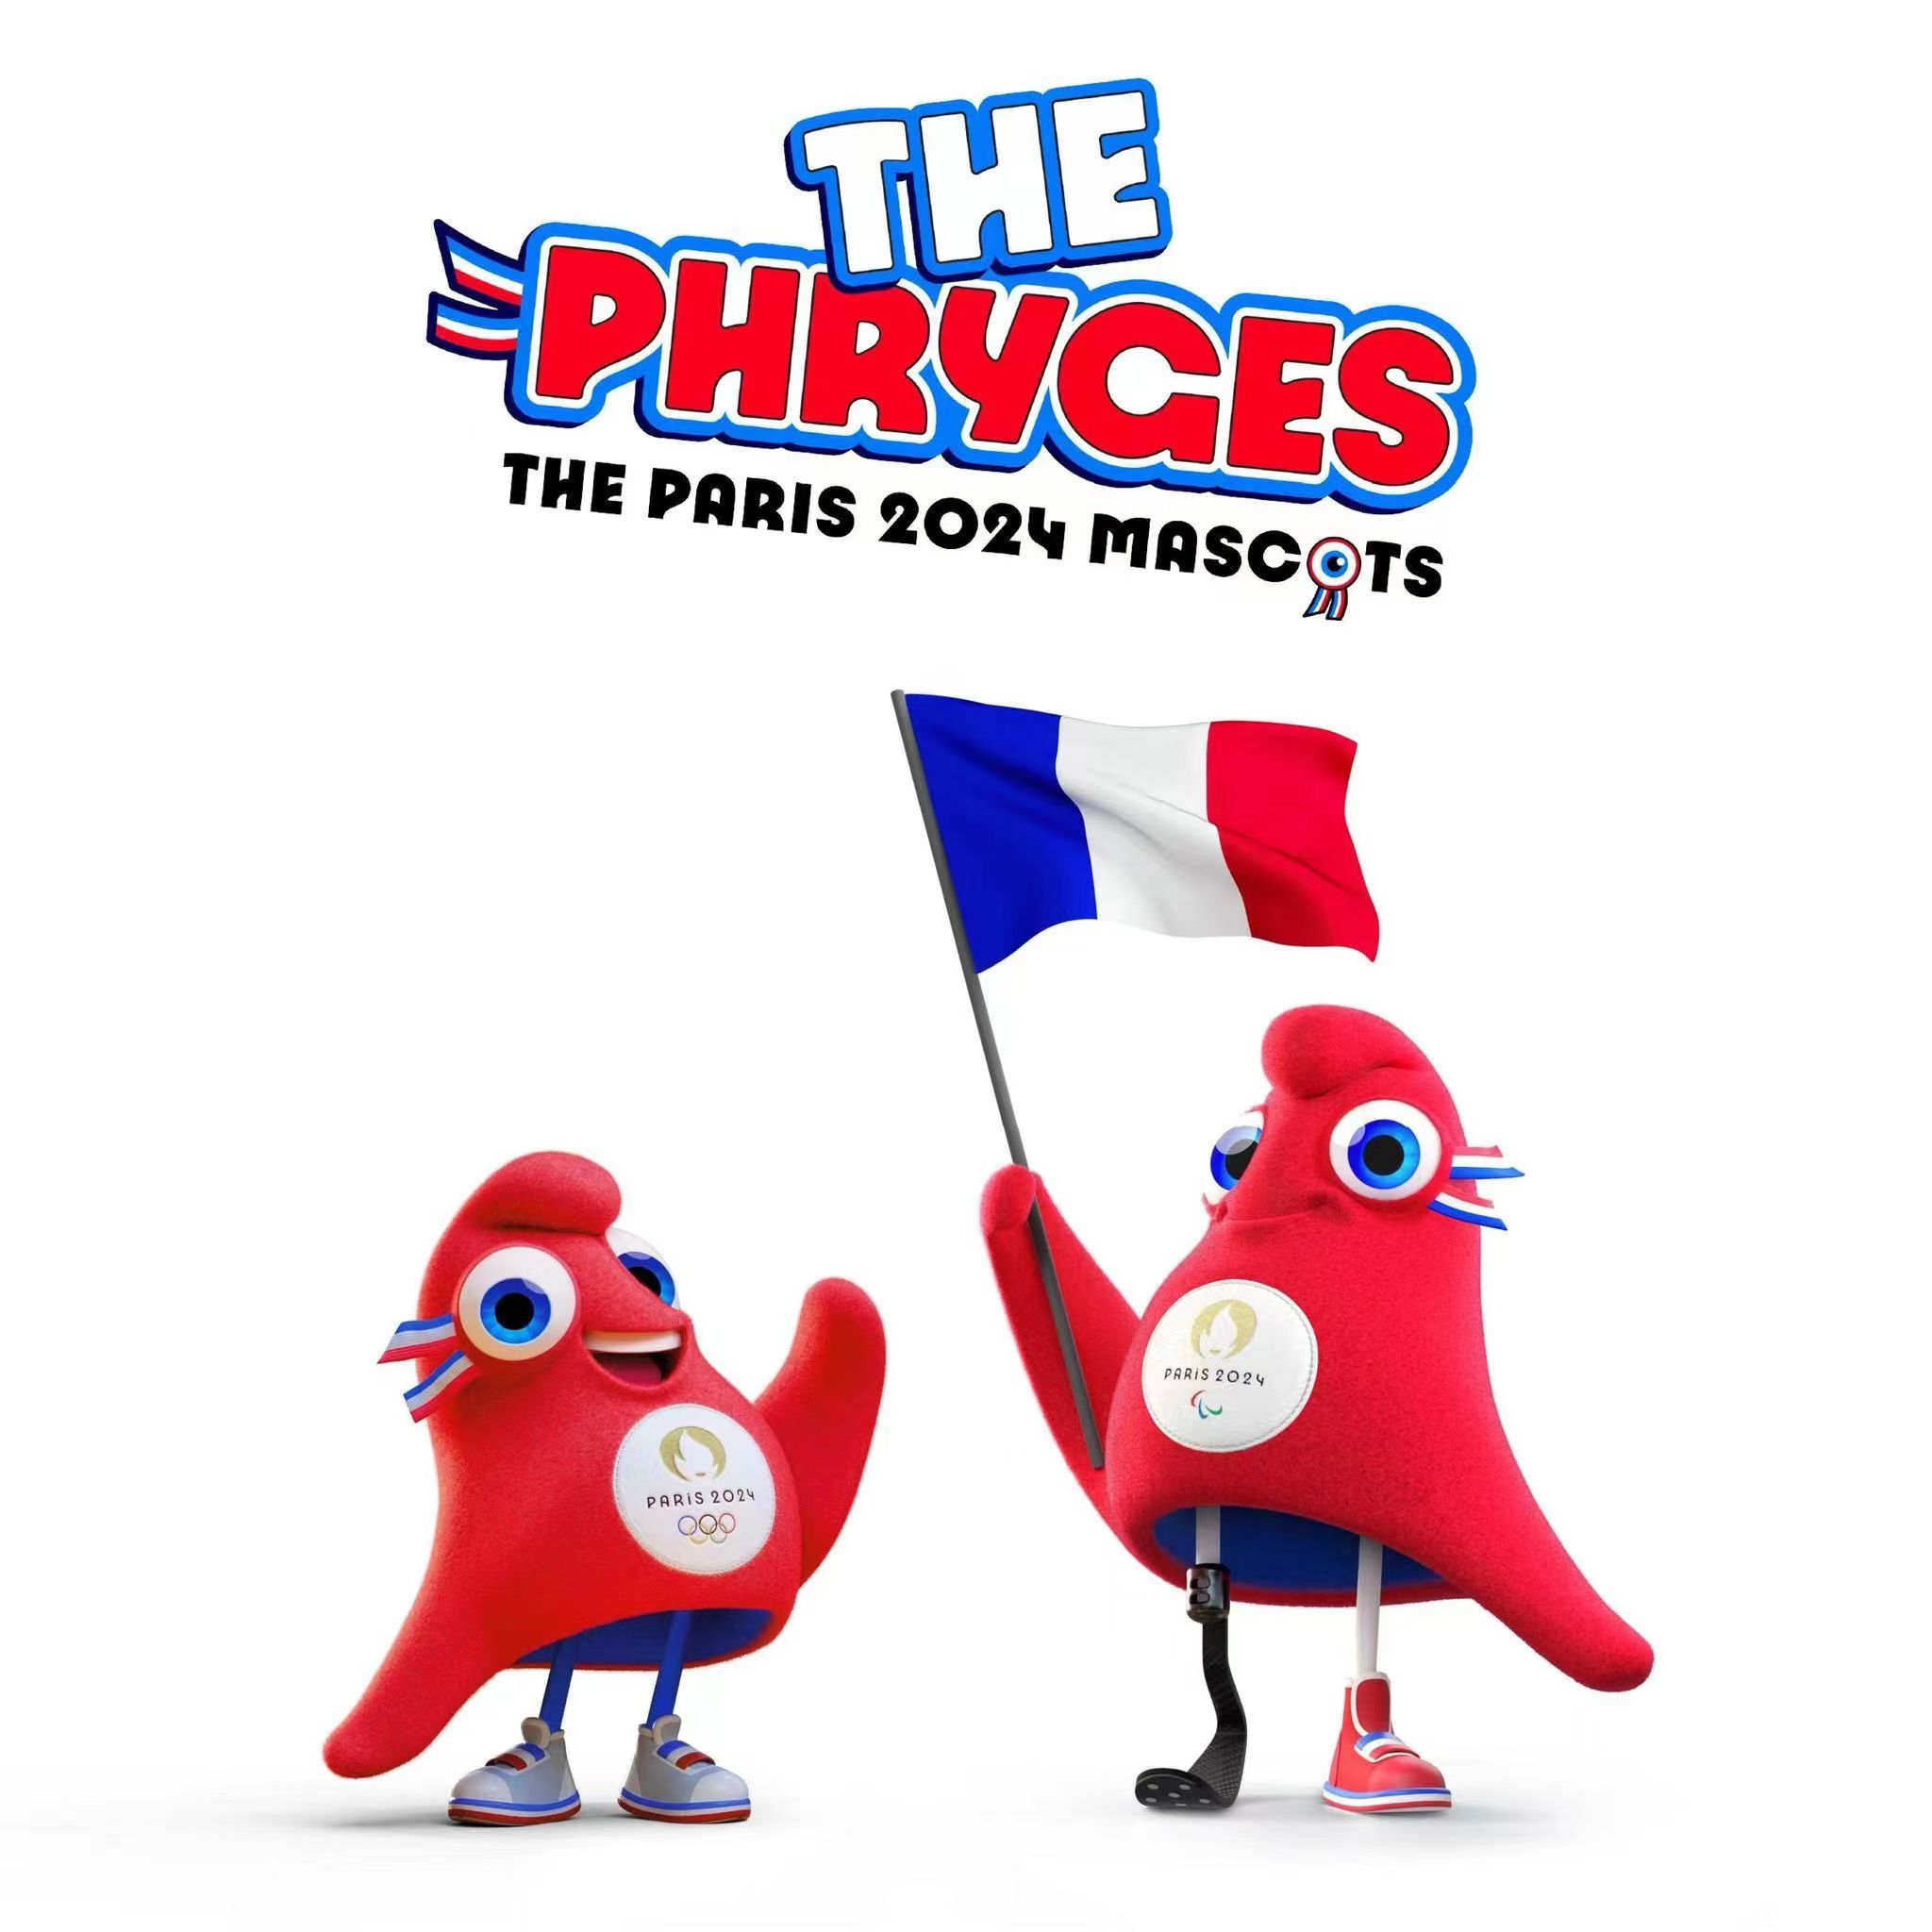 Paris 2024 mascots, the Phryges. /Official twitter account of Paris 2024 